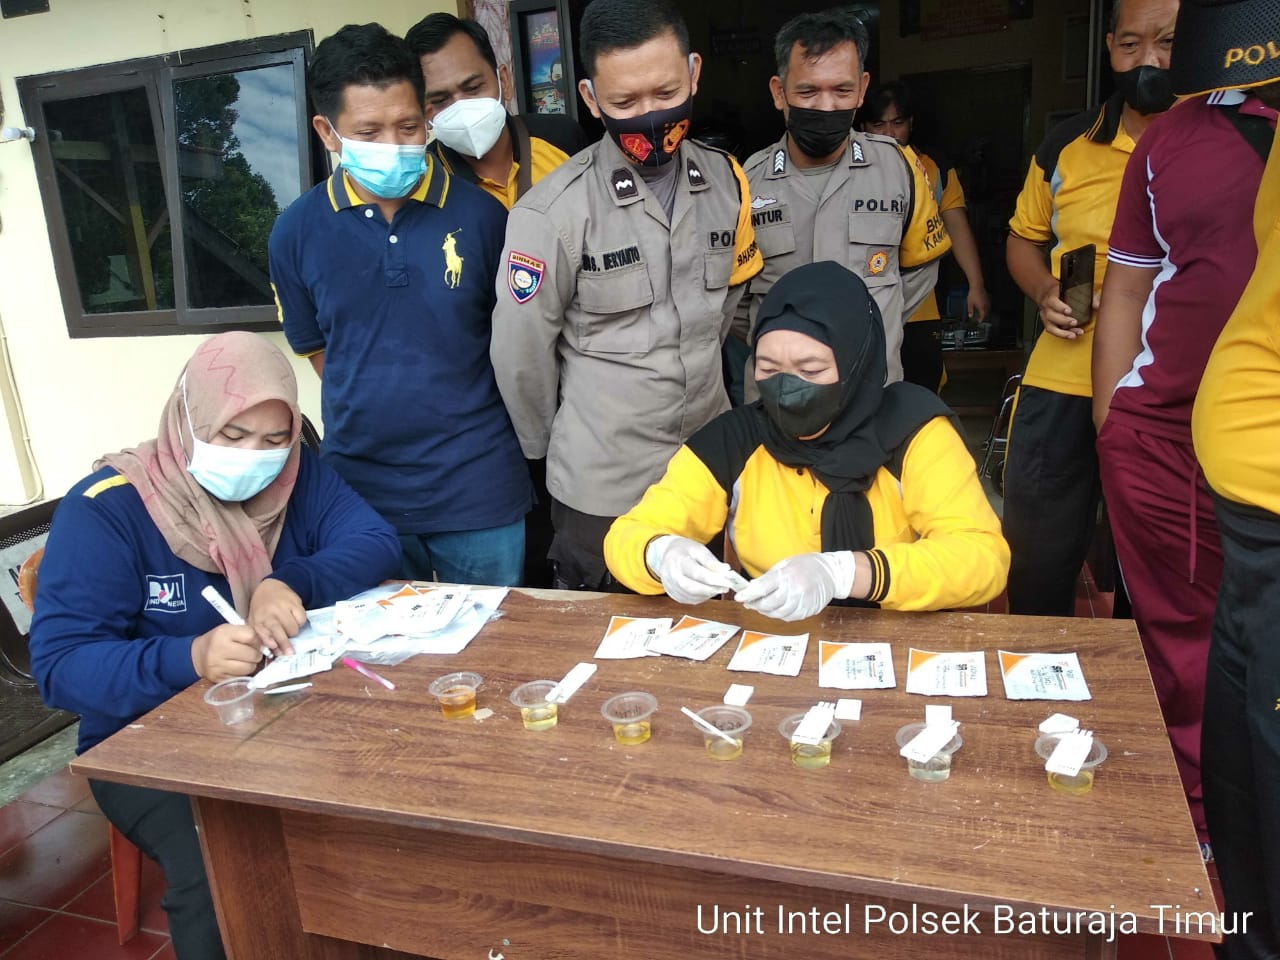 Antisipasi Penyalahgunaan Narkoba, Anggota Polsek Baturaja Timur Di Test Urine